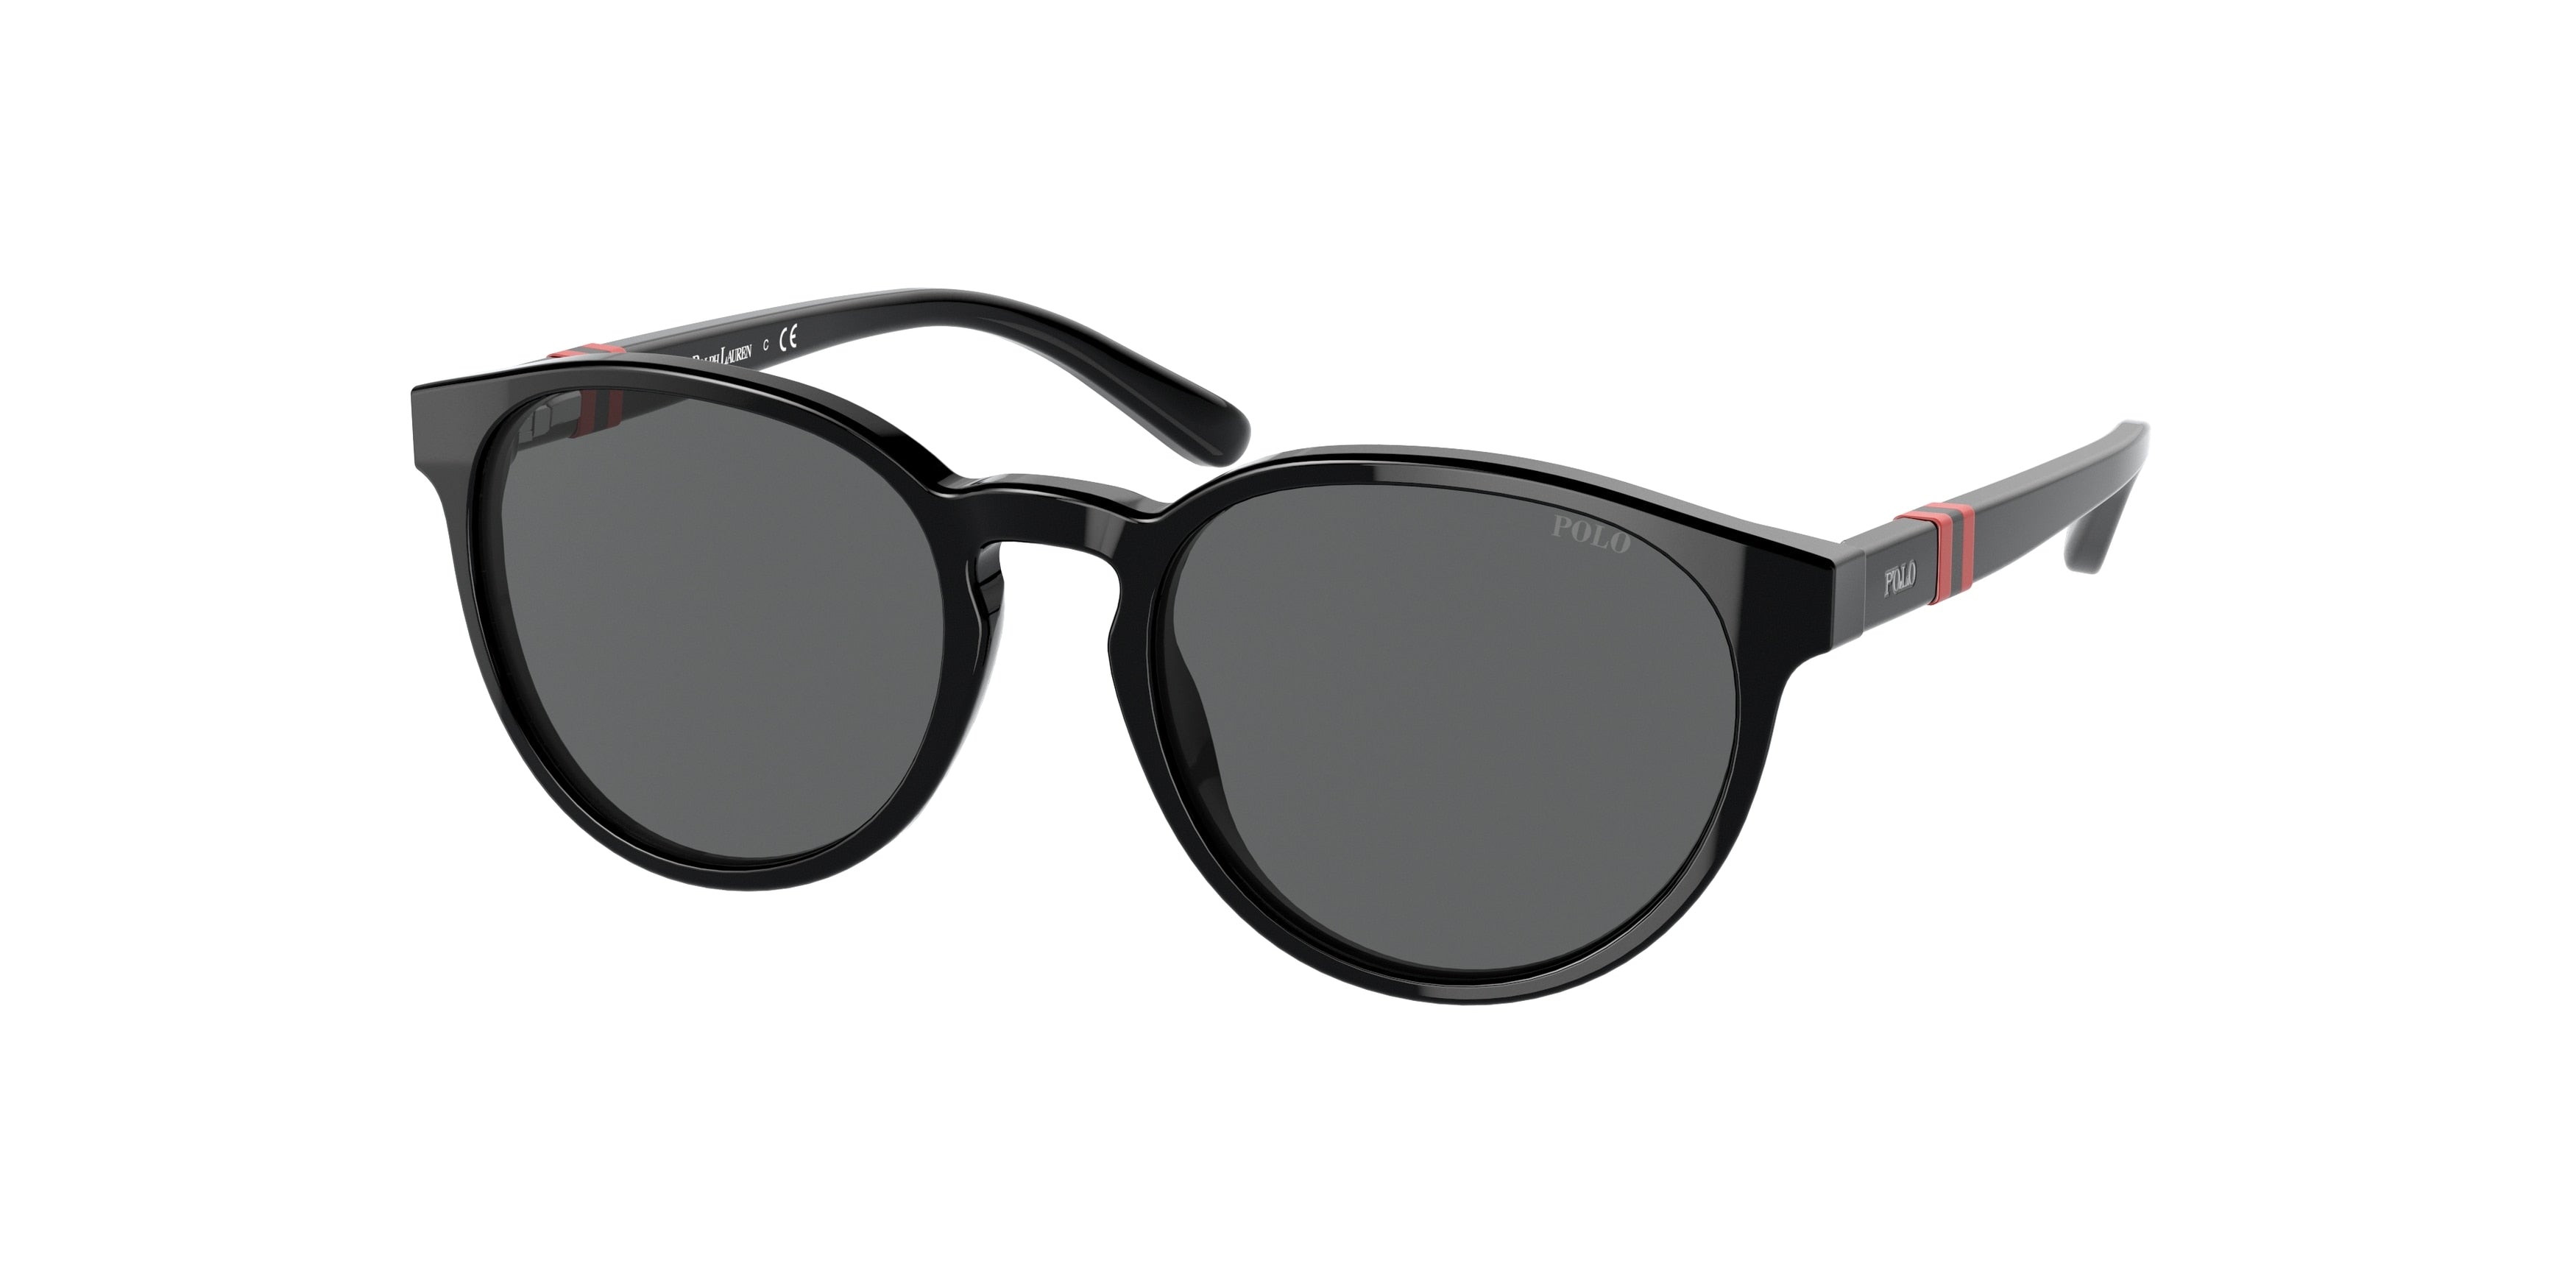 Polo Prep PP9502 Phantos Sunglasses  500187-Shiny Black 48-130-17 - Color Map Black